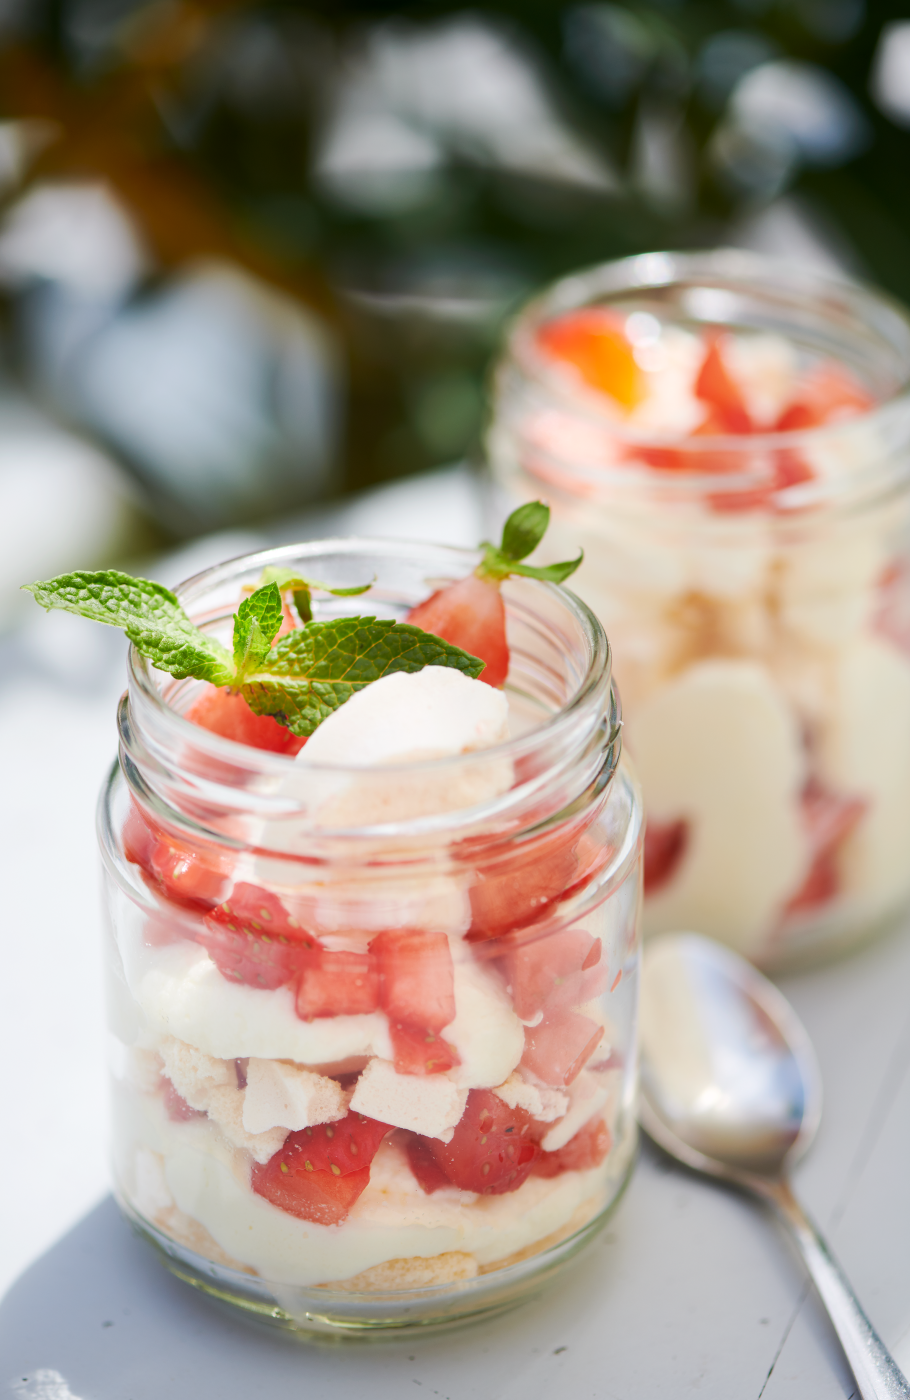 Dessertkreation mit weisser Creme und Erdbeereb, geschichtet im Glas